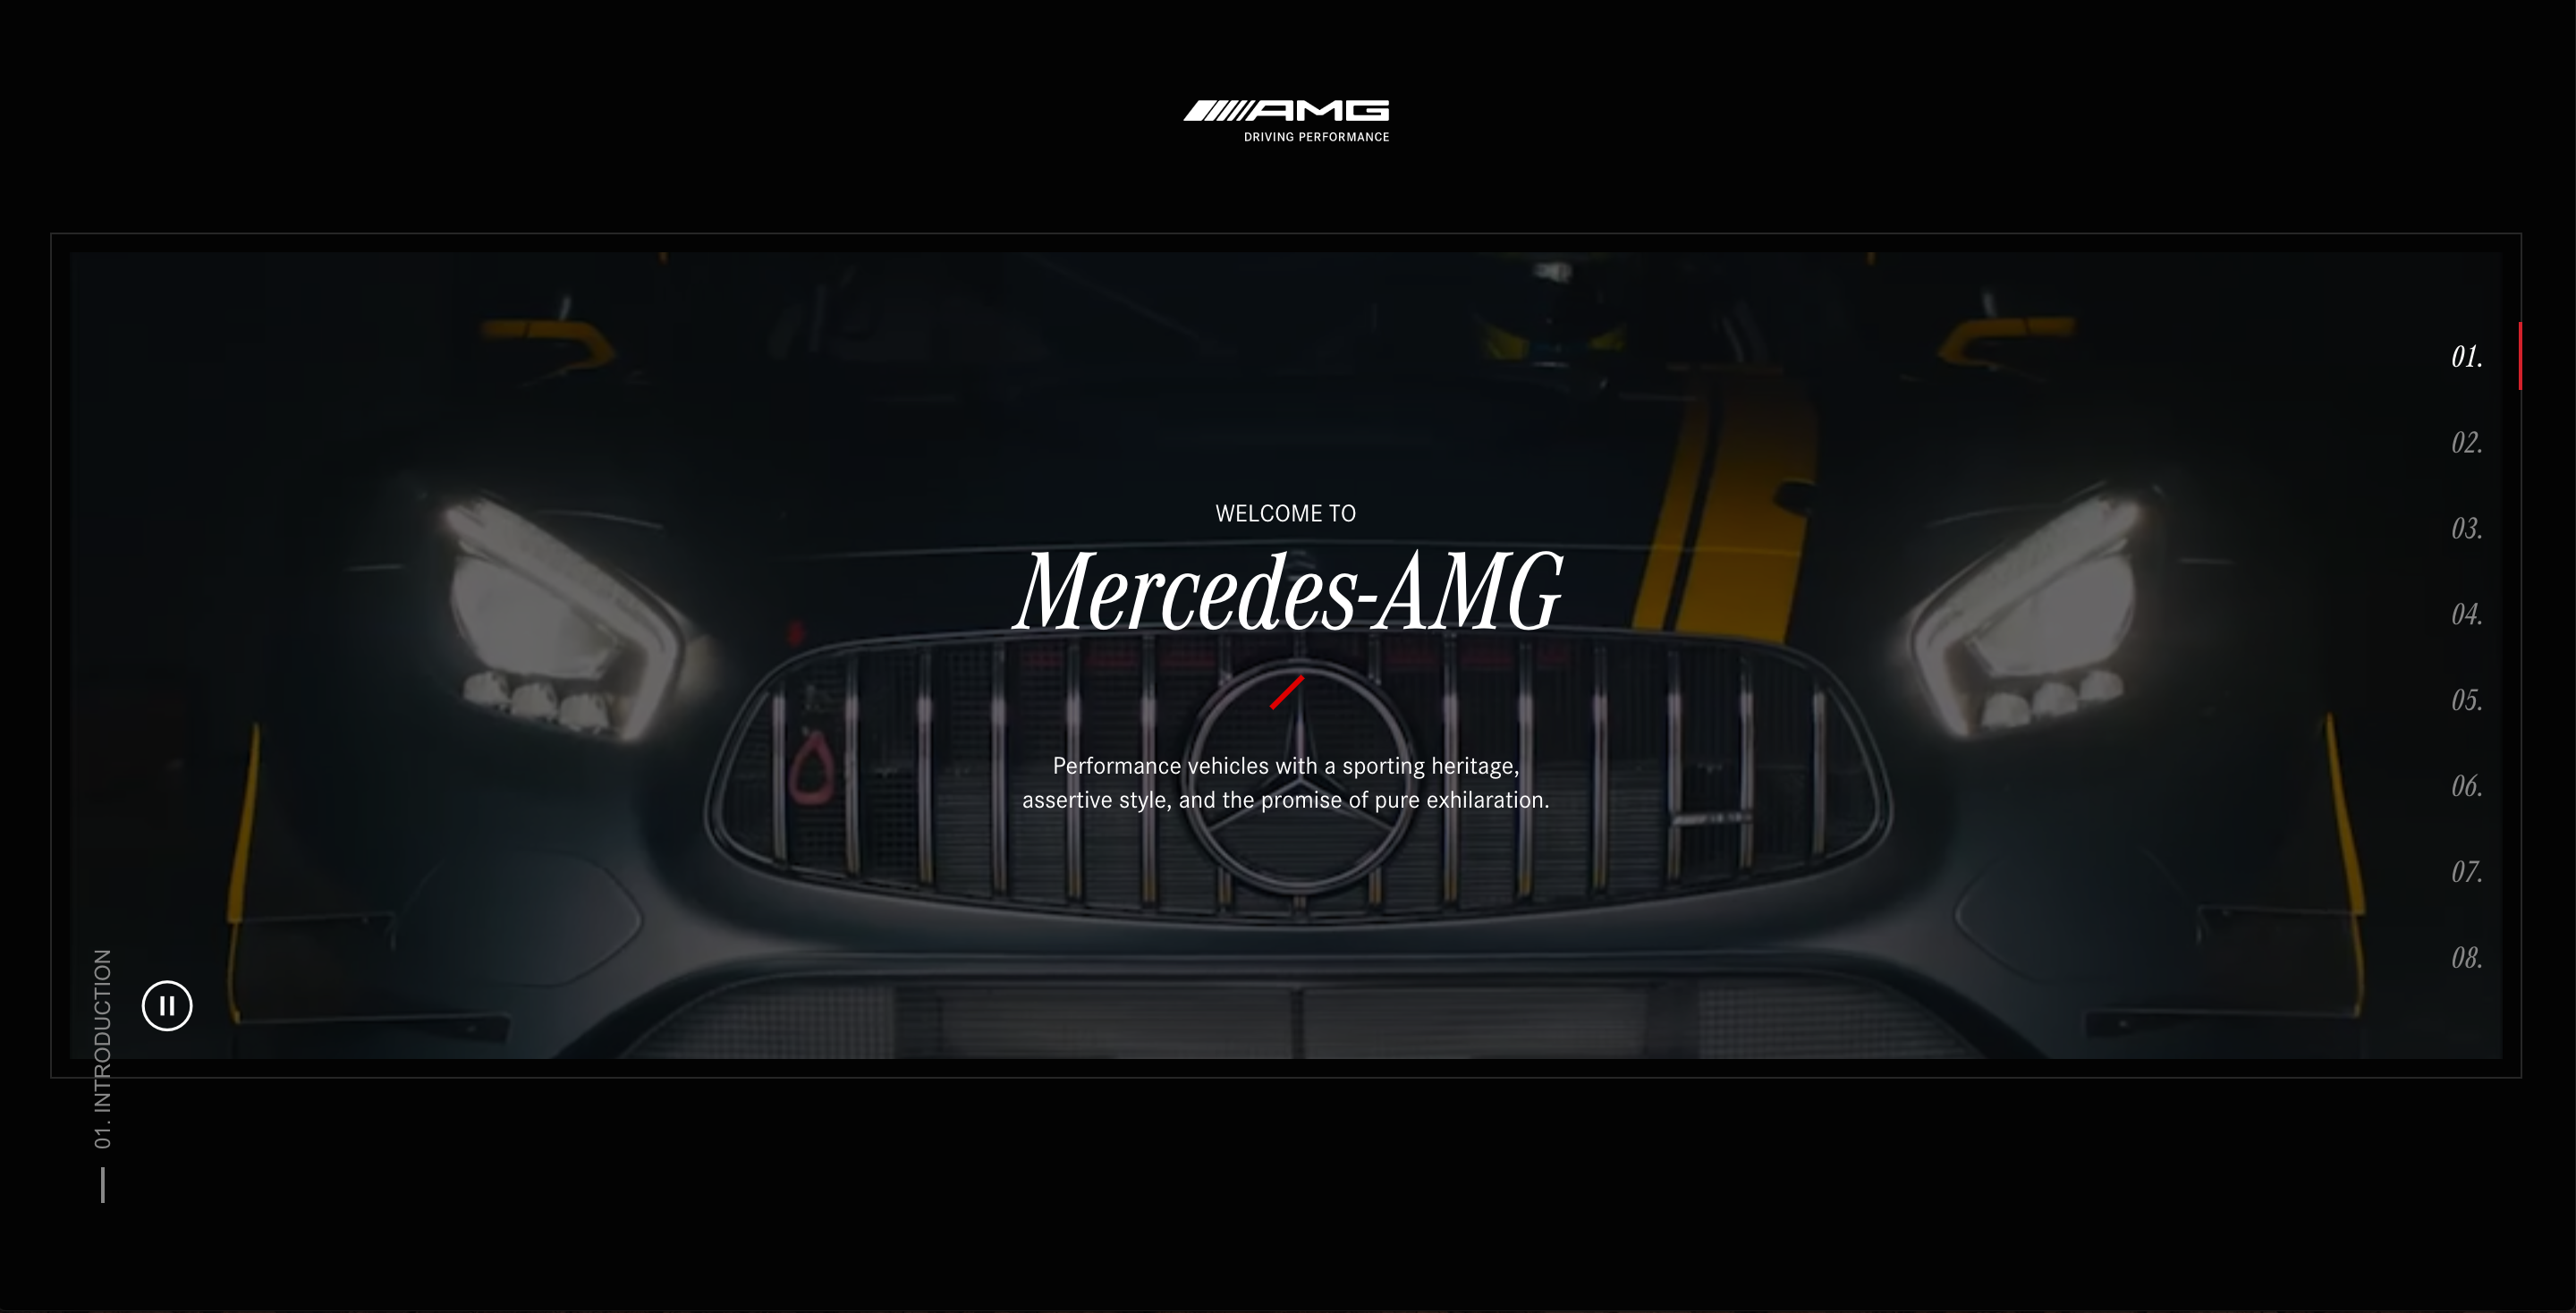 Mercedes-AMG image